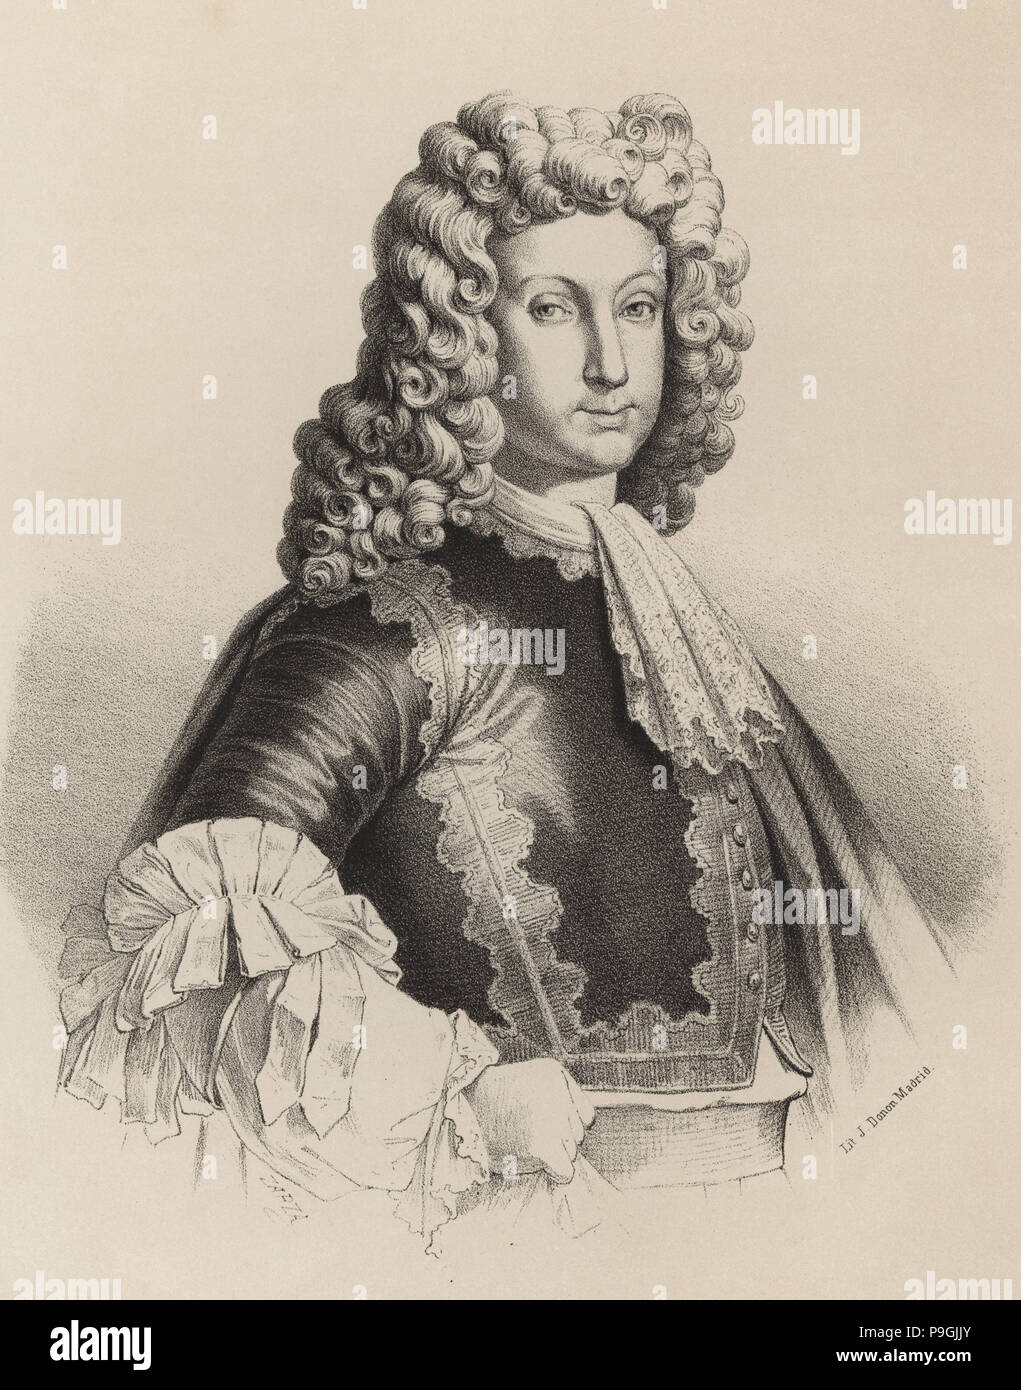 Louis I (1707-1724), fils aîné de Philippe V et Maria Luisa de Savoie, roi d'Espagne en 1724, génie… Banque D'Images